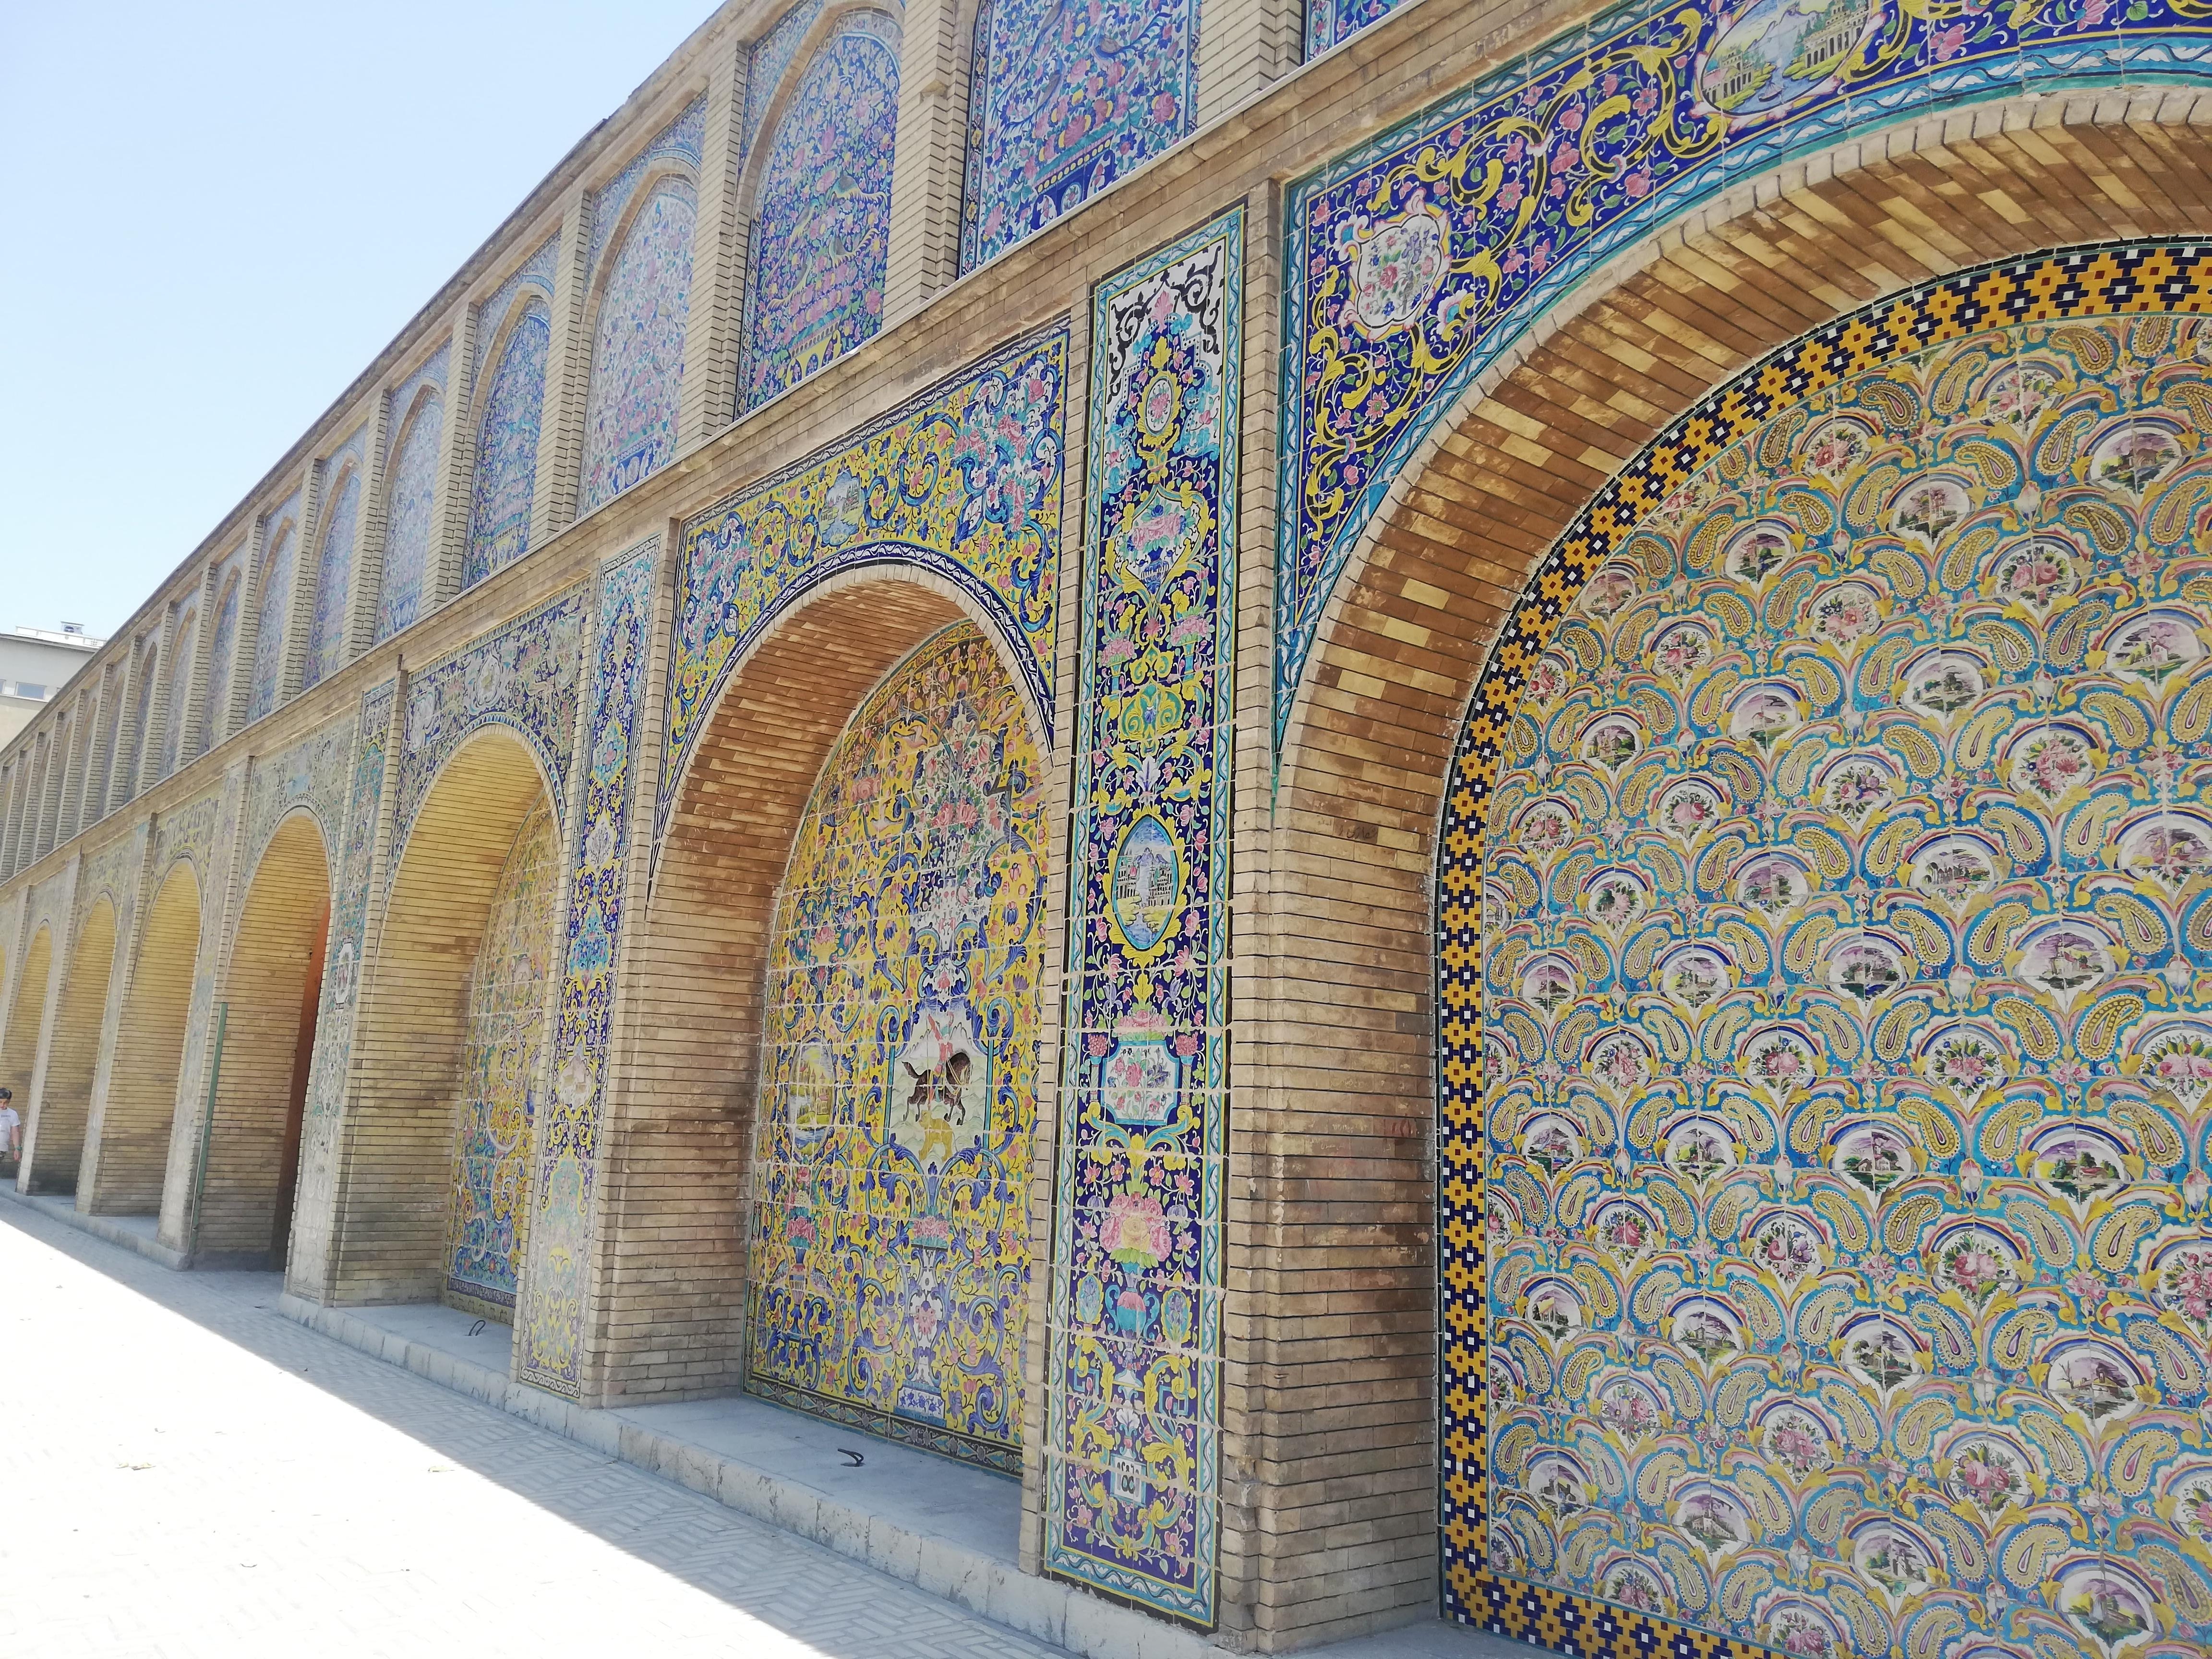 Schockverliebt in die Fassade des Golestan Palast in Teheran #verliebt #teheran #art